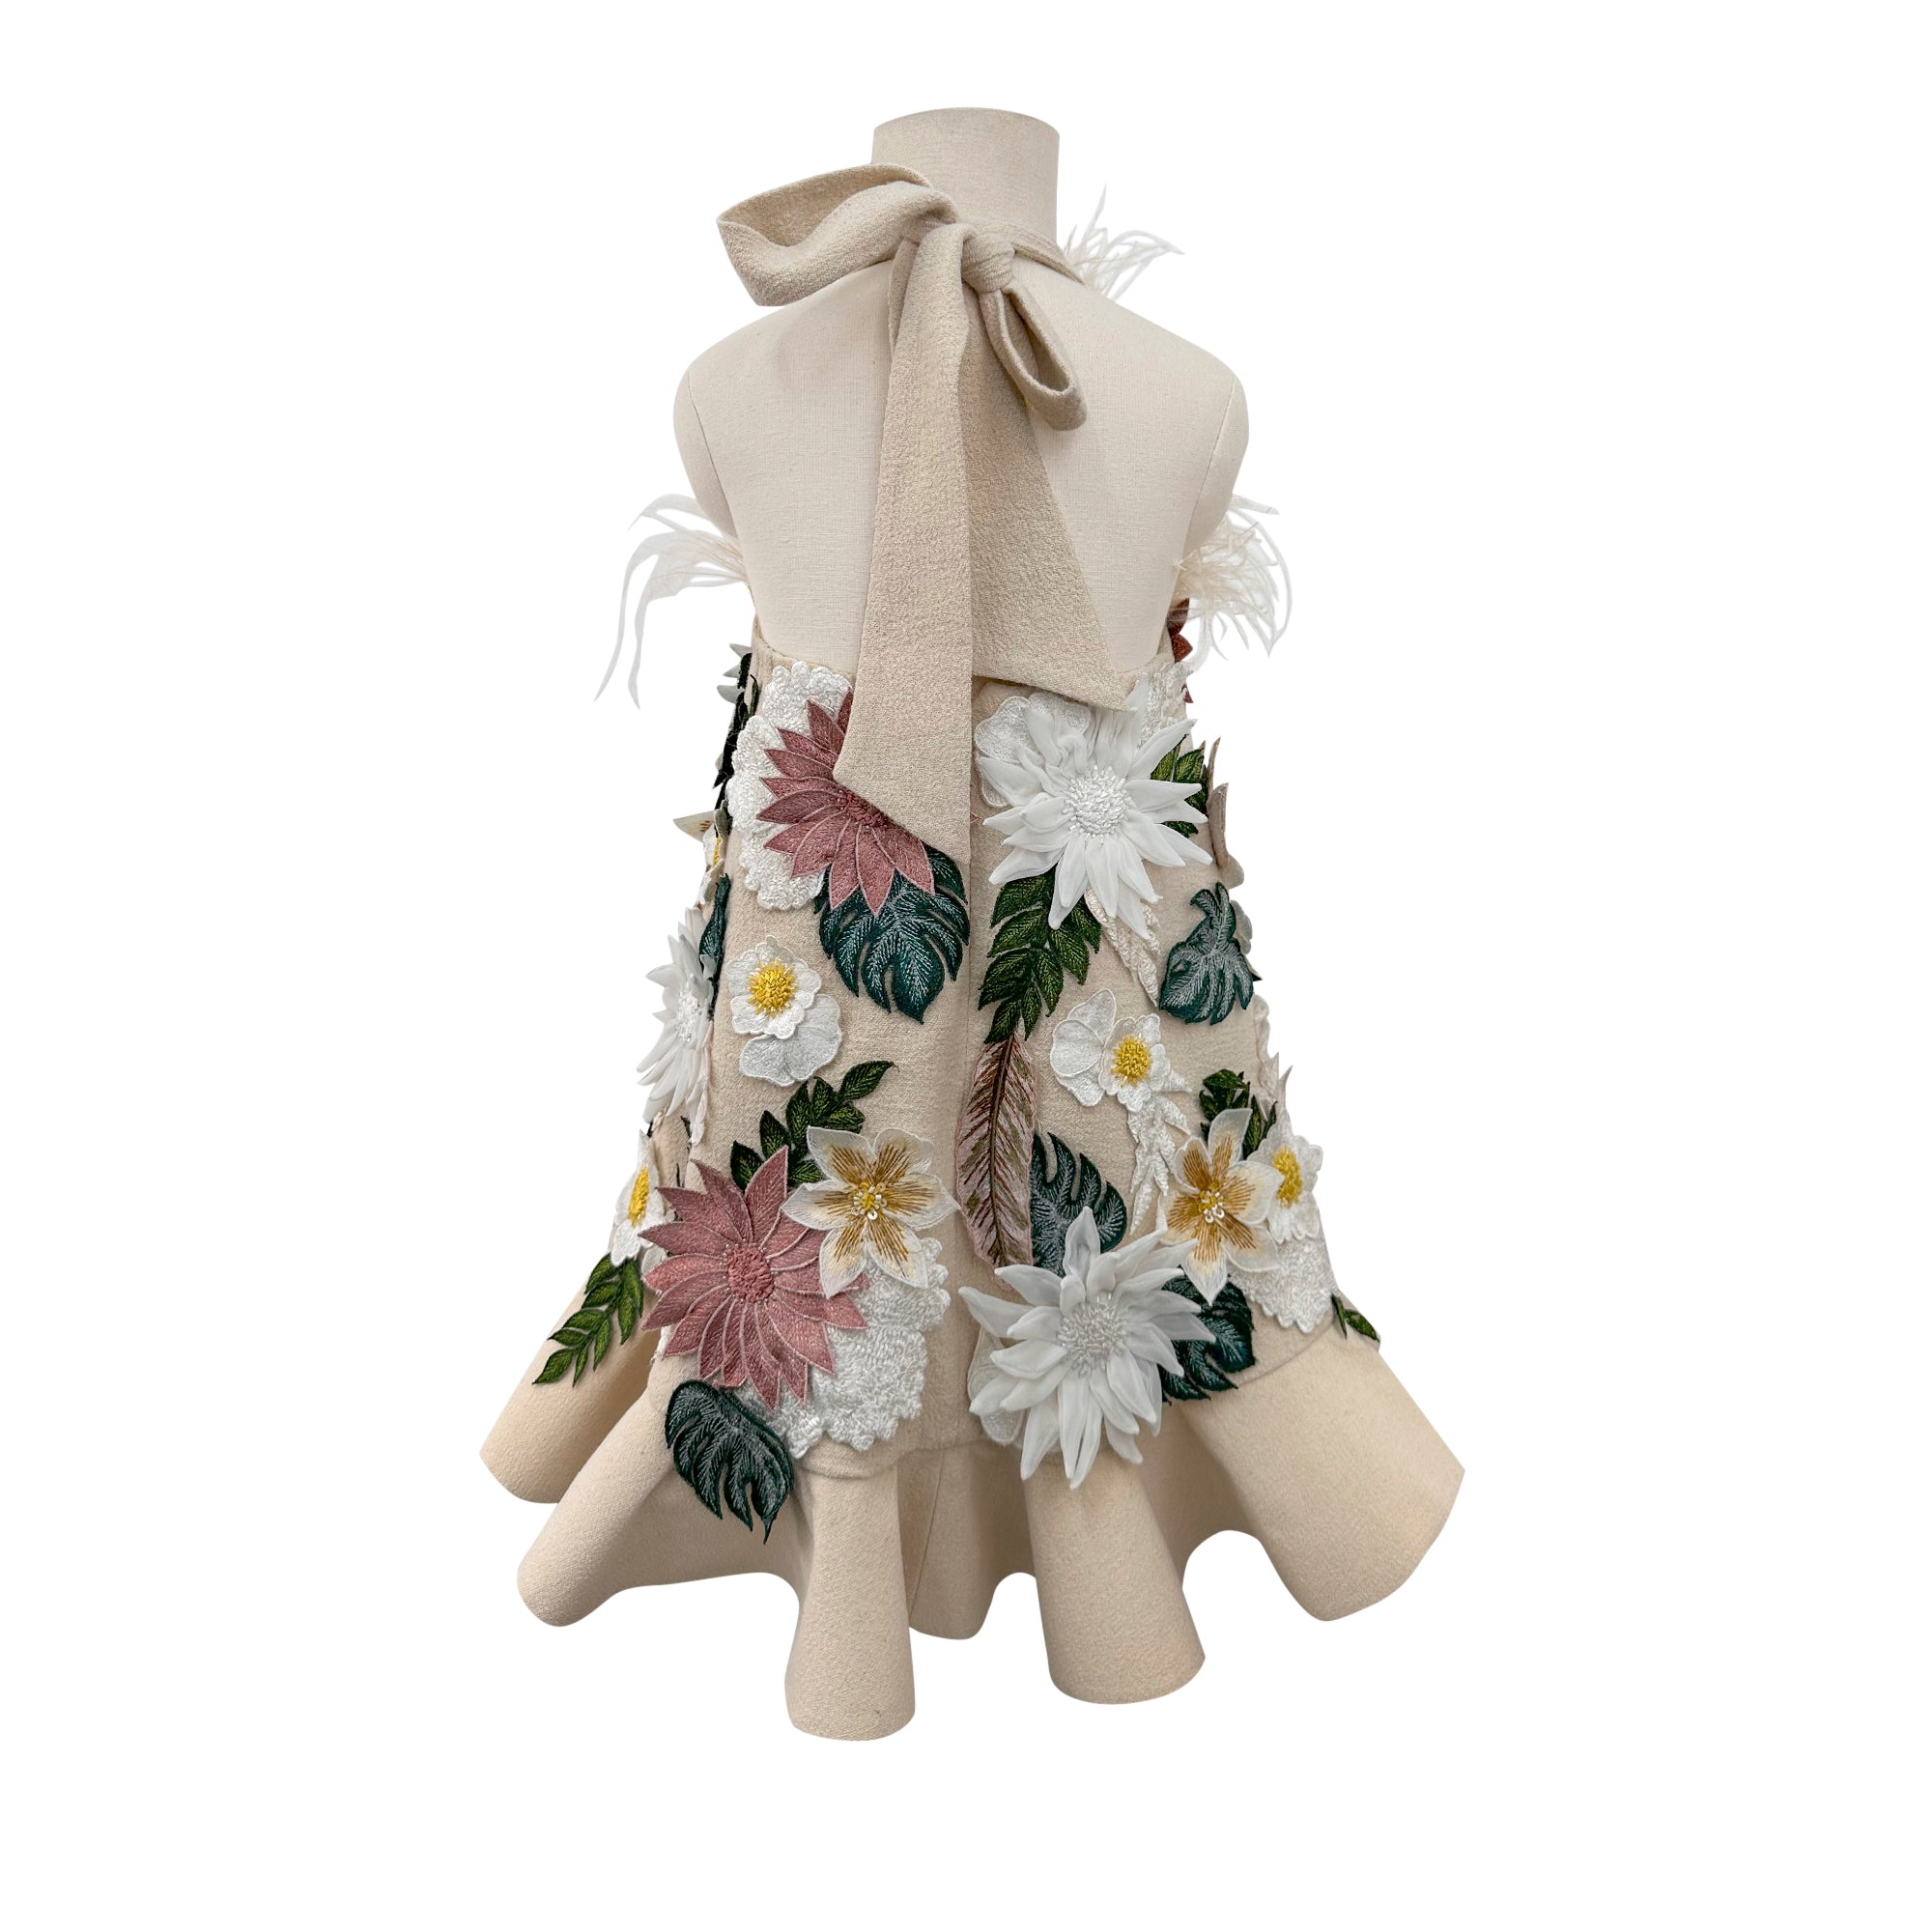 Floral Applique Dress with Detachable Feathers